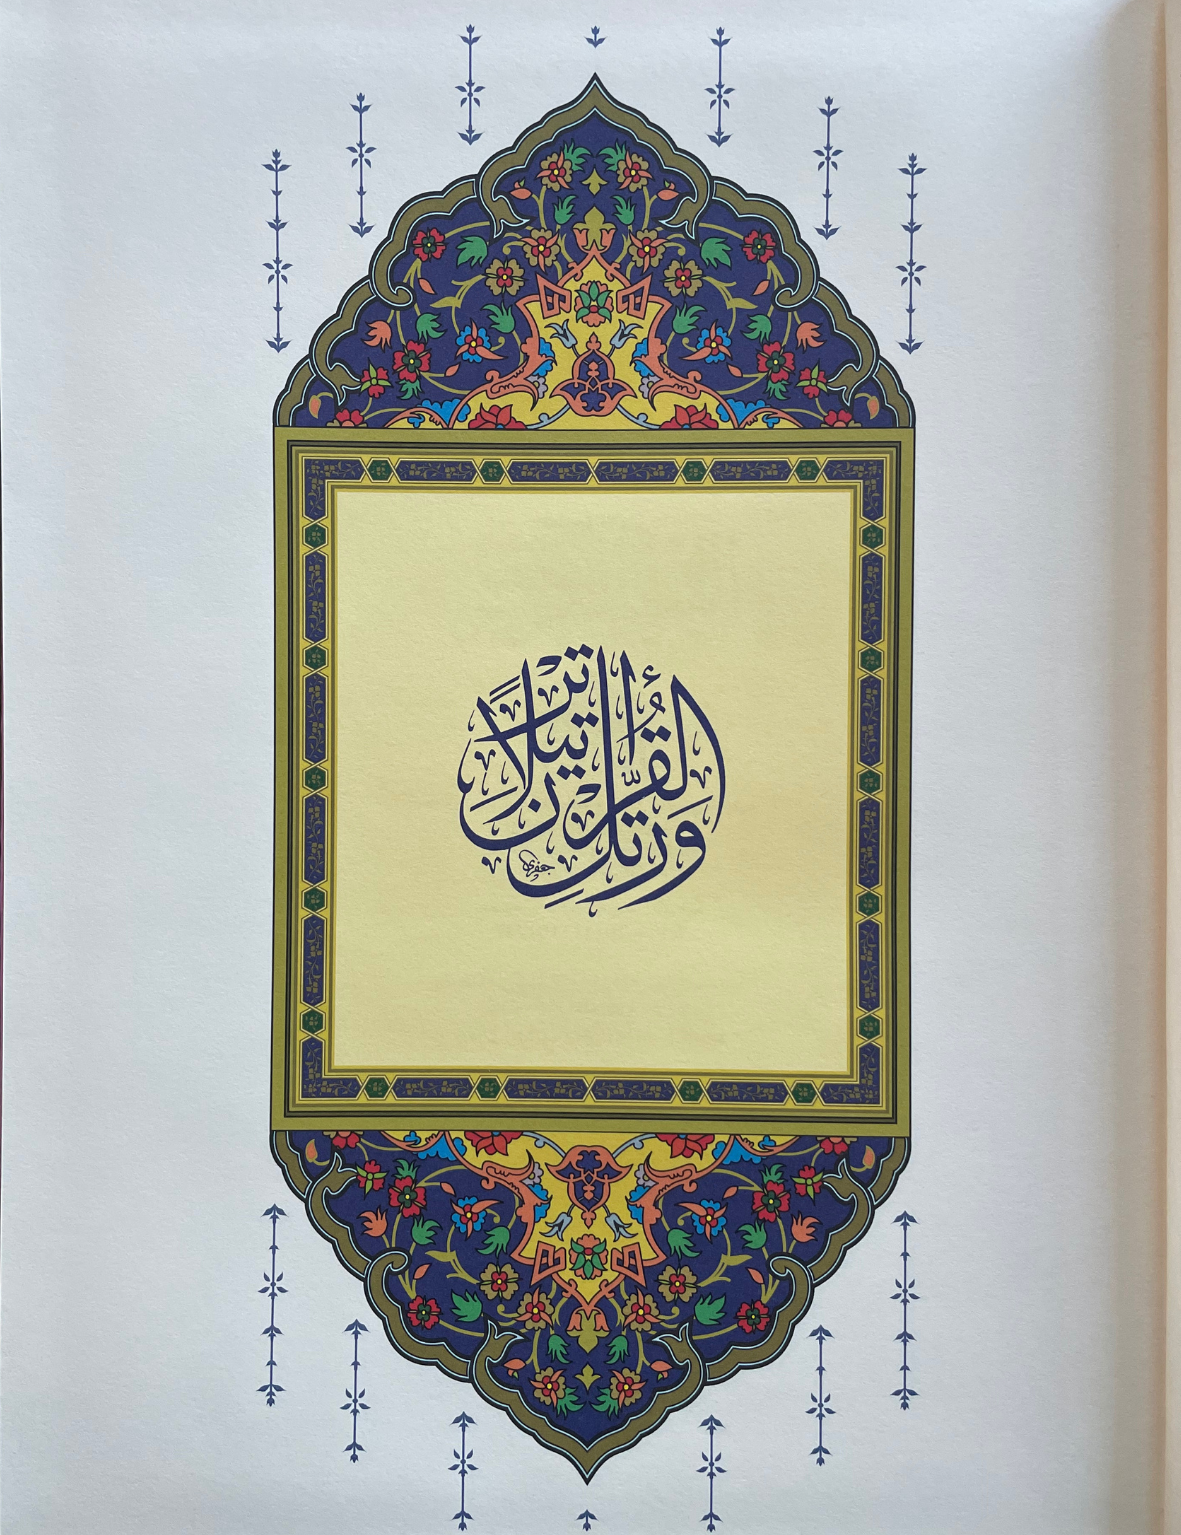 koranen på arabiska a4 storlek